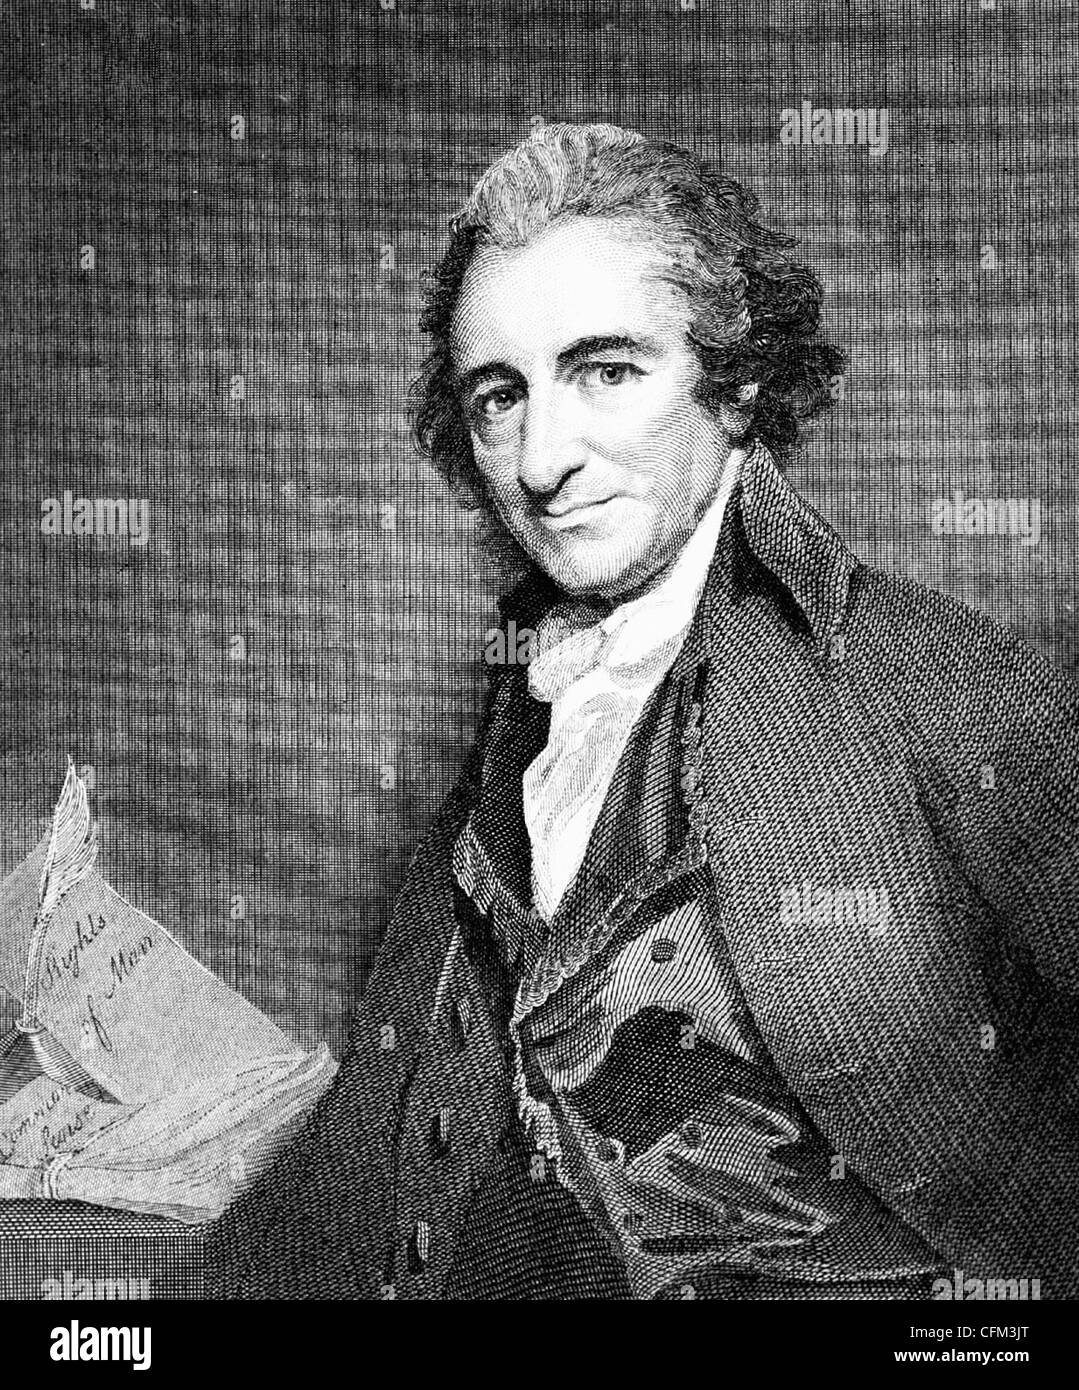 Thomas Paine - amerikanischer Patriot und Schriftsteller, ca. 1793 Stockfoto